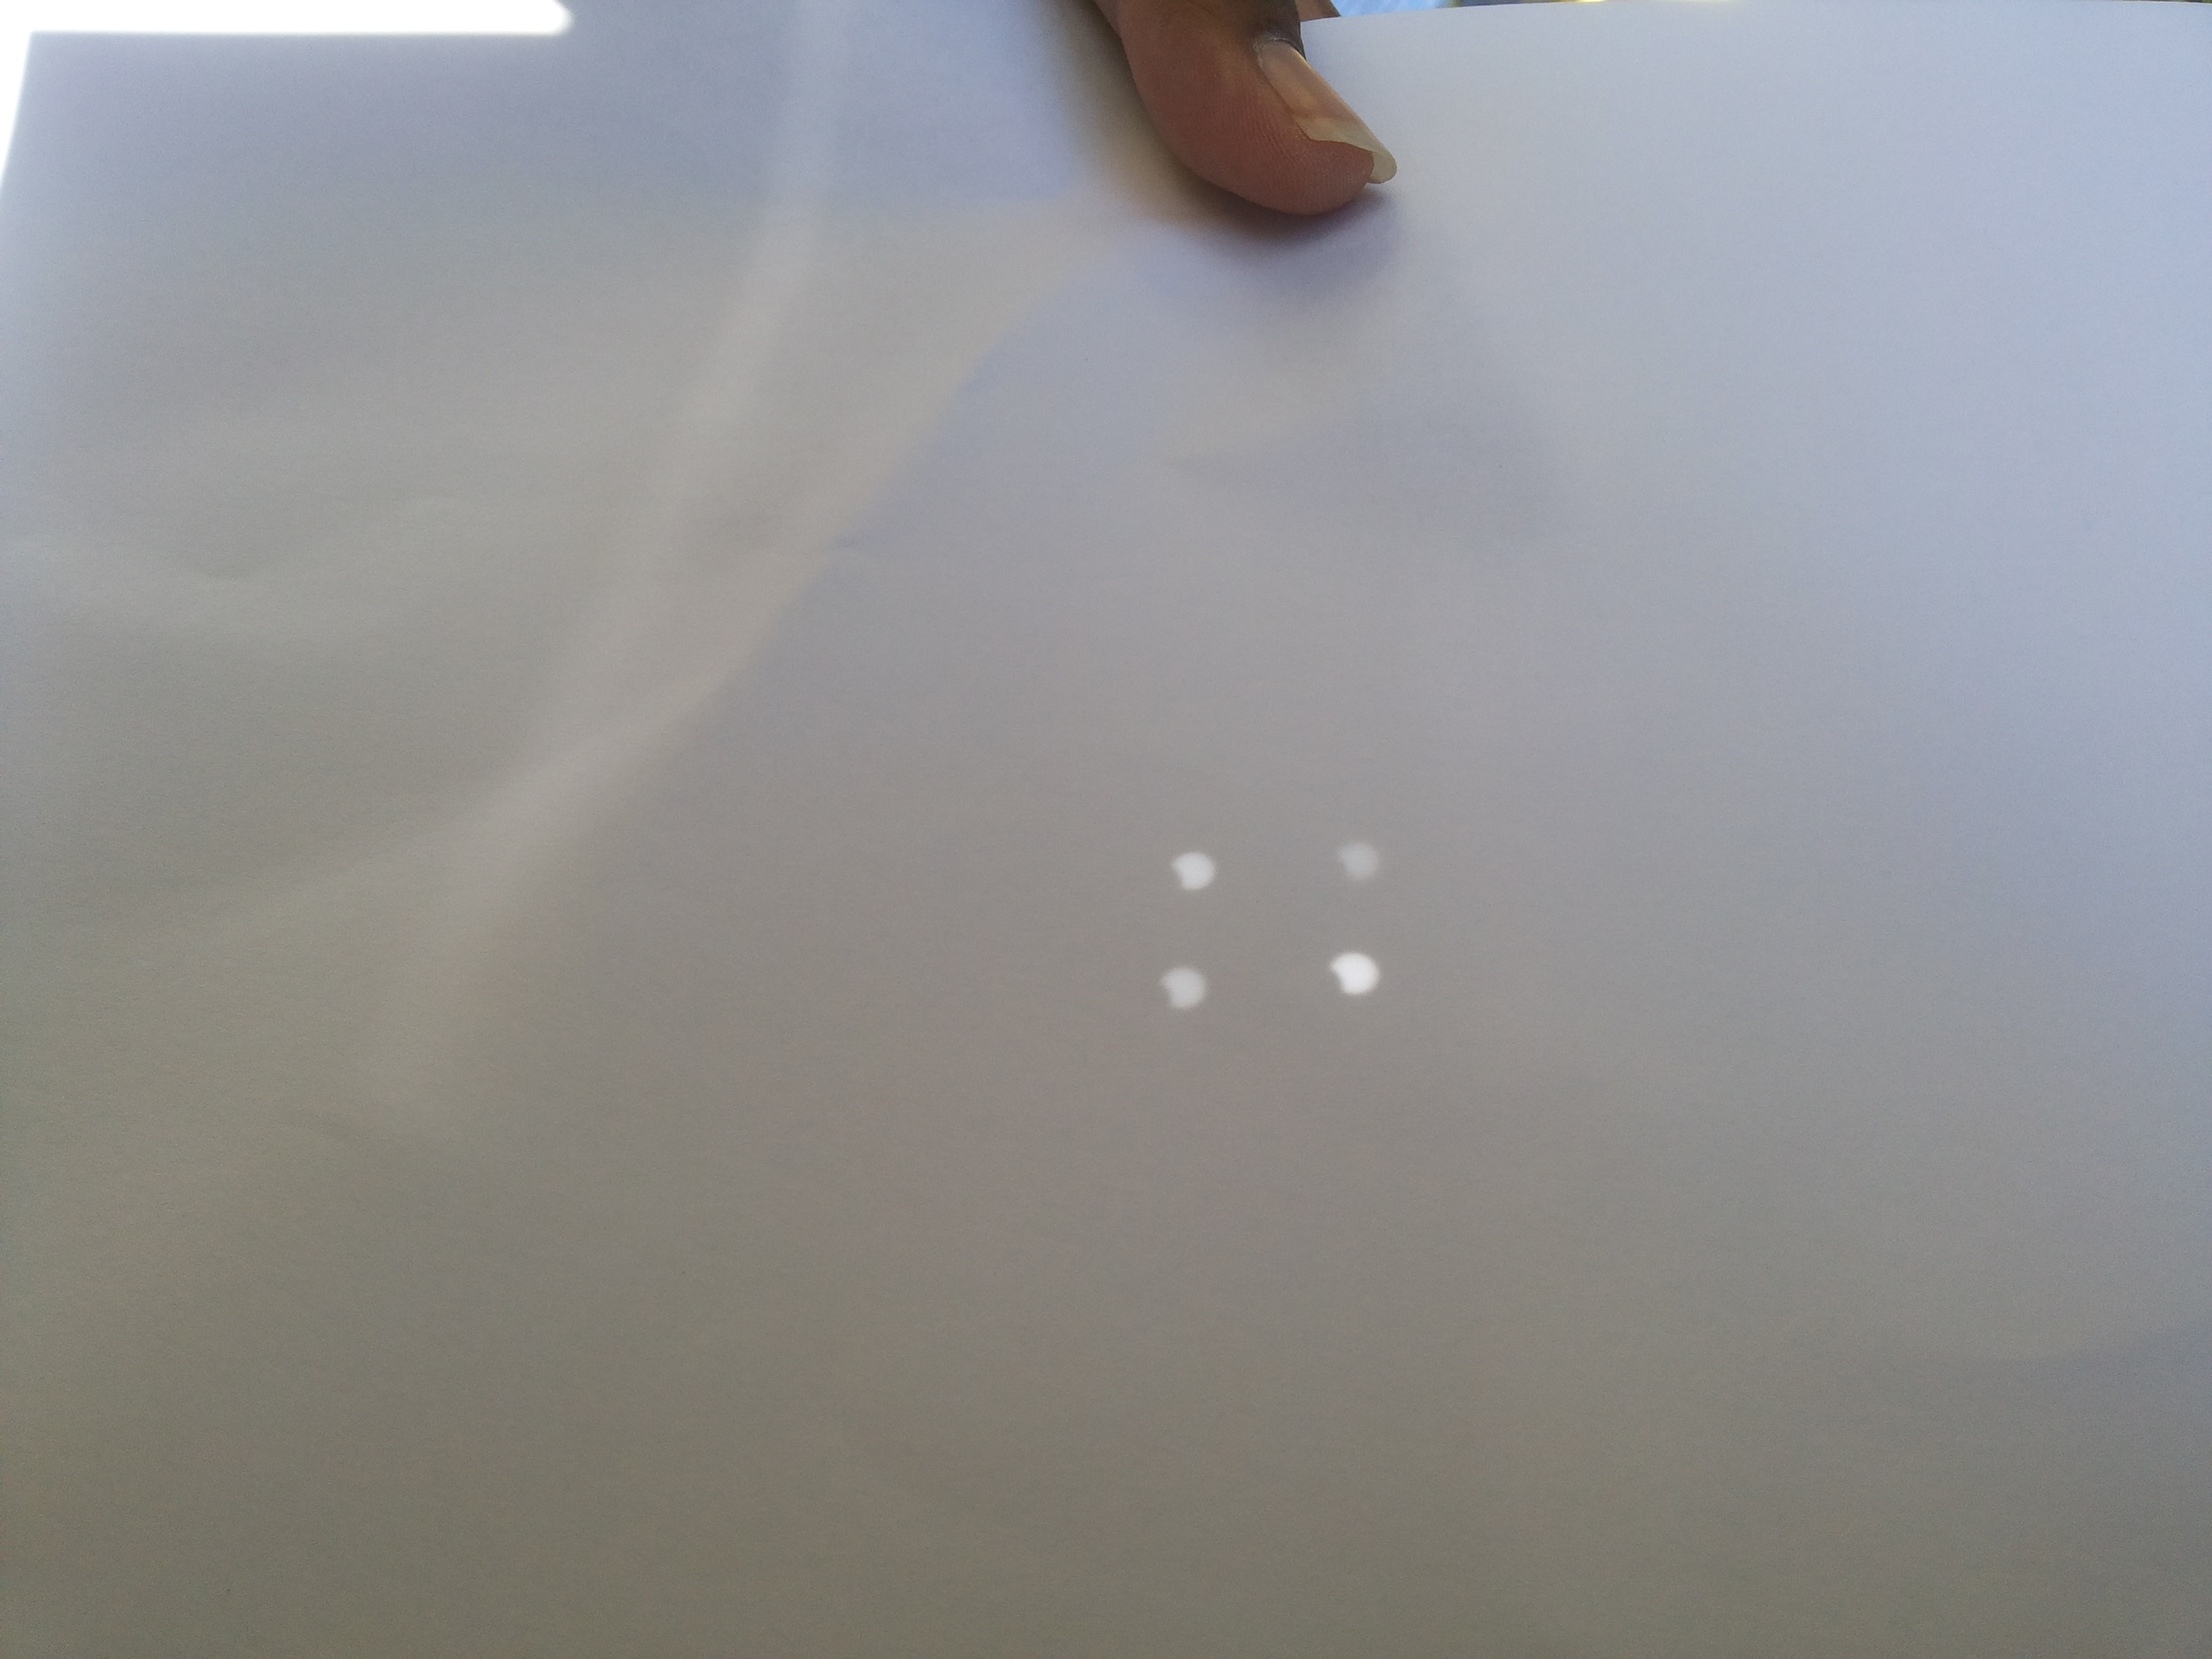 Gerhana matahari terlihat lewat titik pada kertas yang dilubangi (dok pribadi)